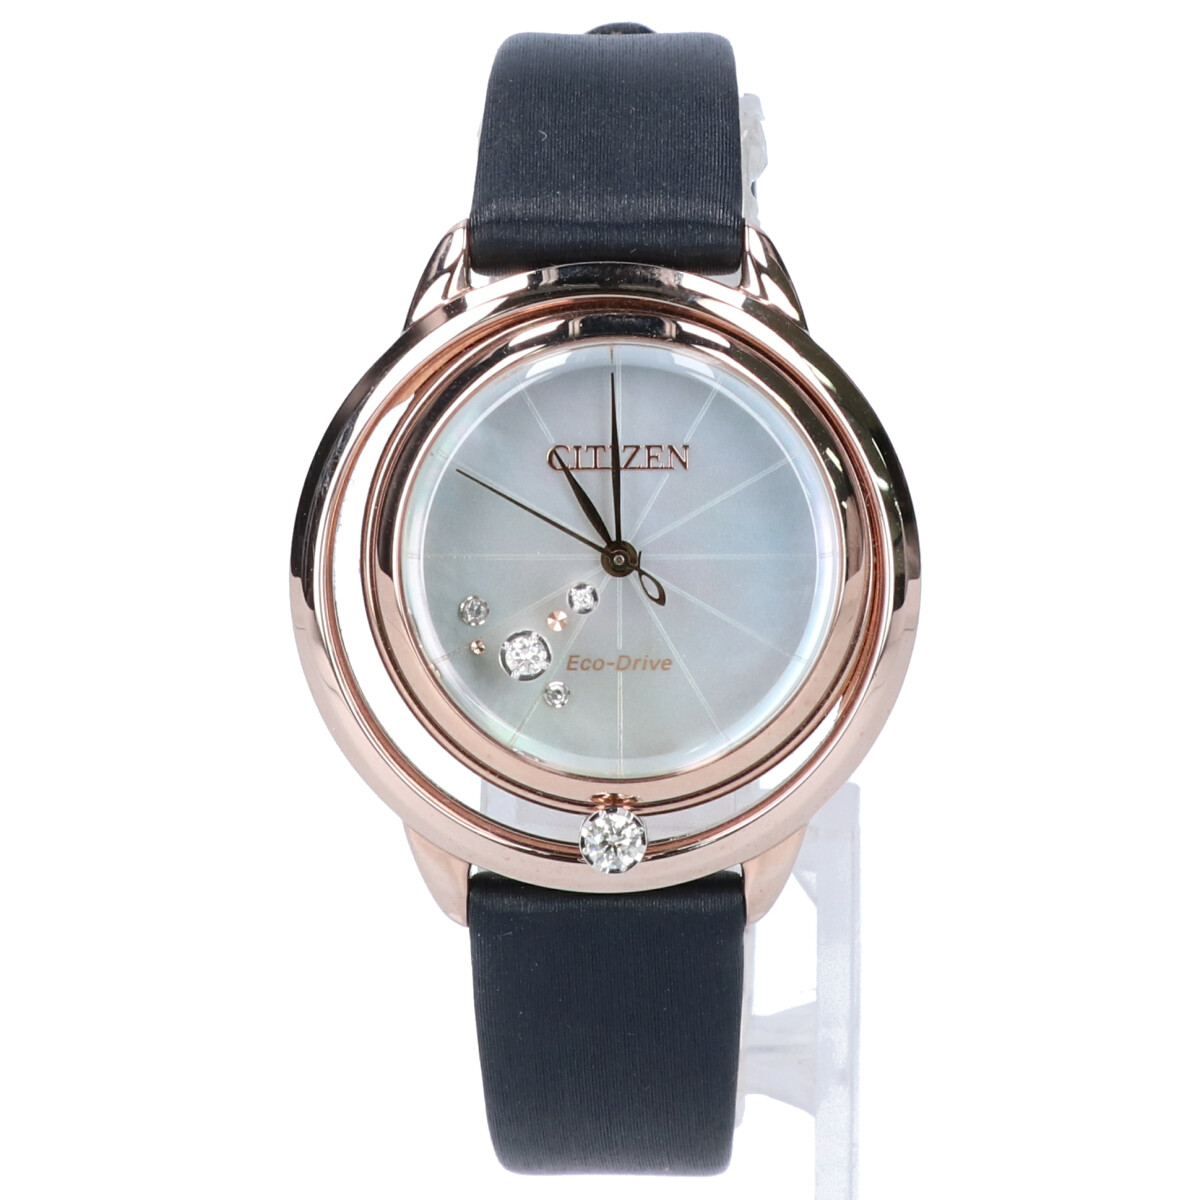 シチズンのEW5522-20D エル エコドライブ ダイヤモンド シェル文字盤  腕時計の買取実績です。